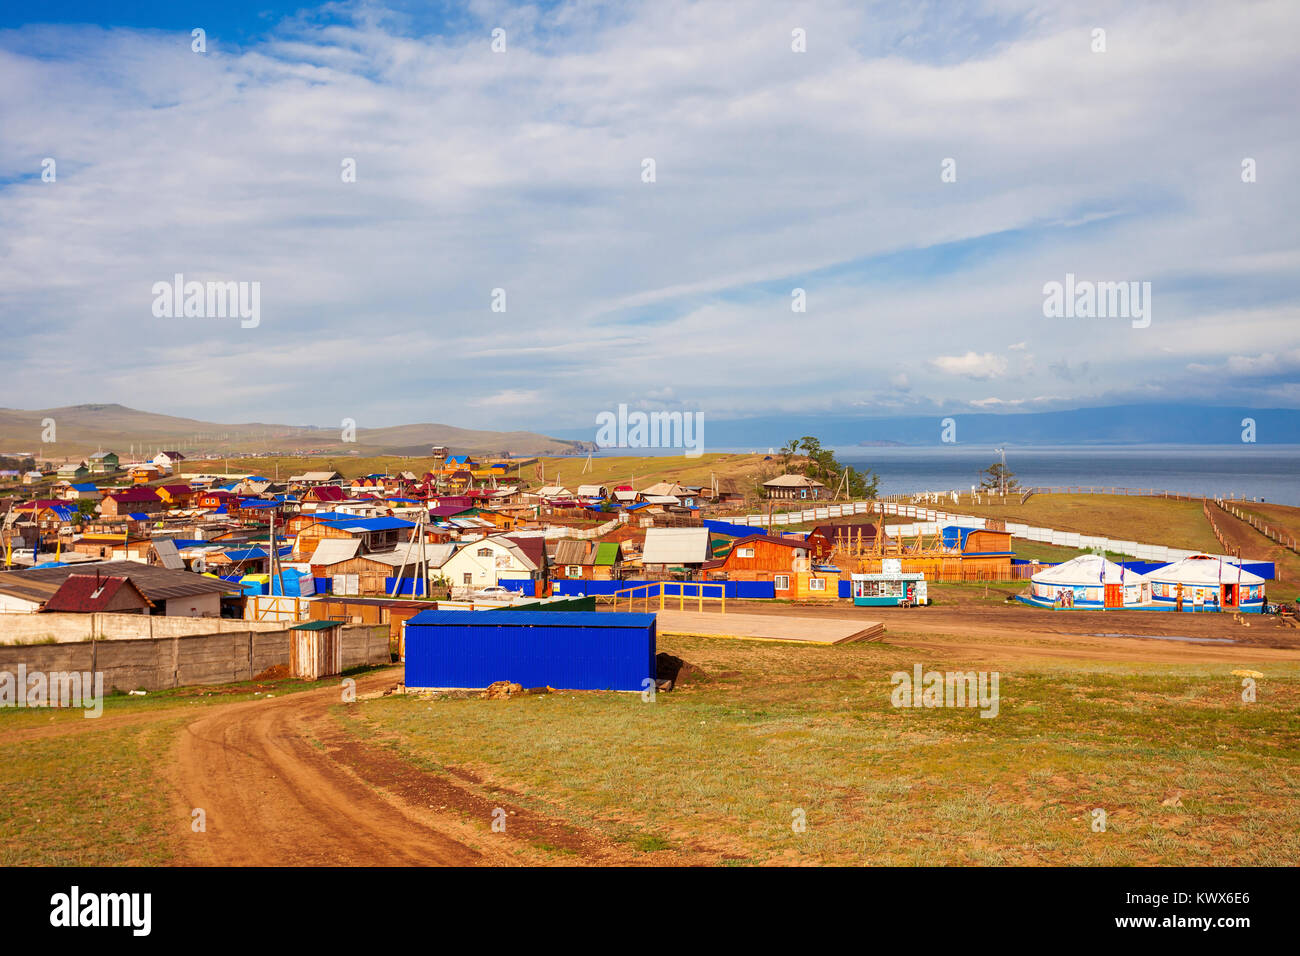 Toledo Dorf auf der Insel Olchon. Toledo in der Nähe des Baikalsees in Sibirien, Russland. Stockfoto